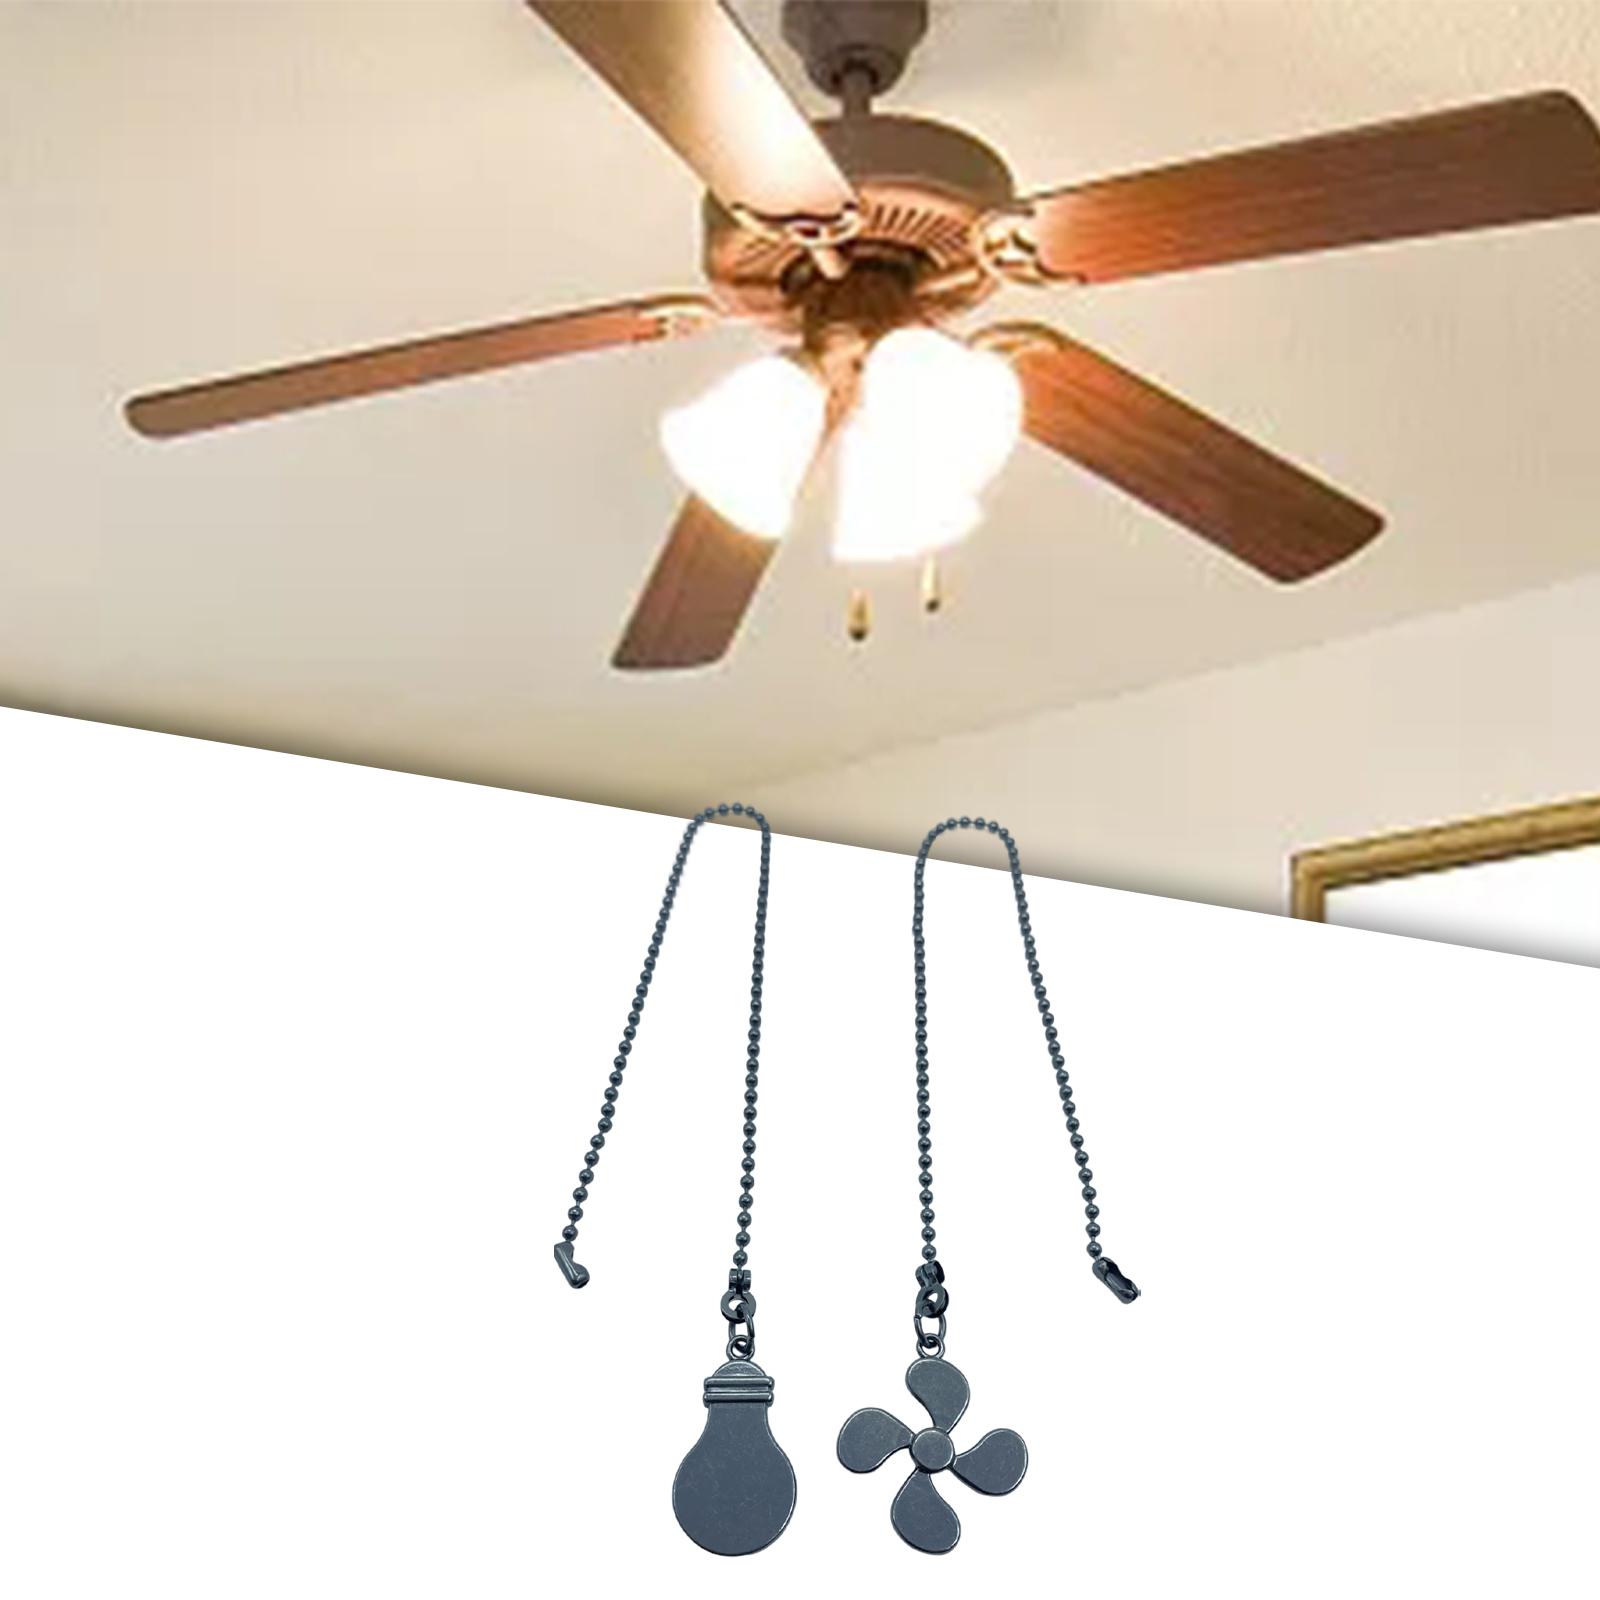 Ceiling Fan Pull Chain Ornaments Fan Extension Chain for Lamp Ceiling Fan style C